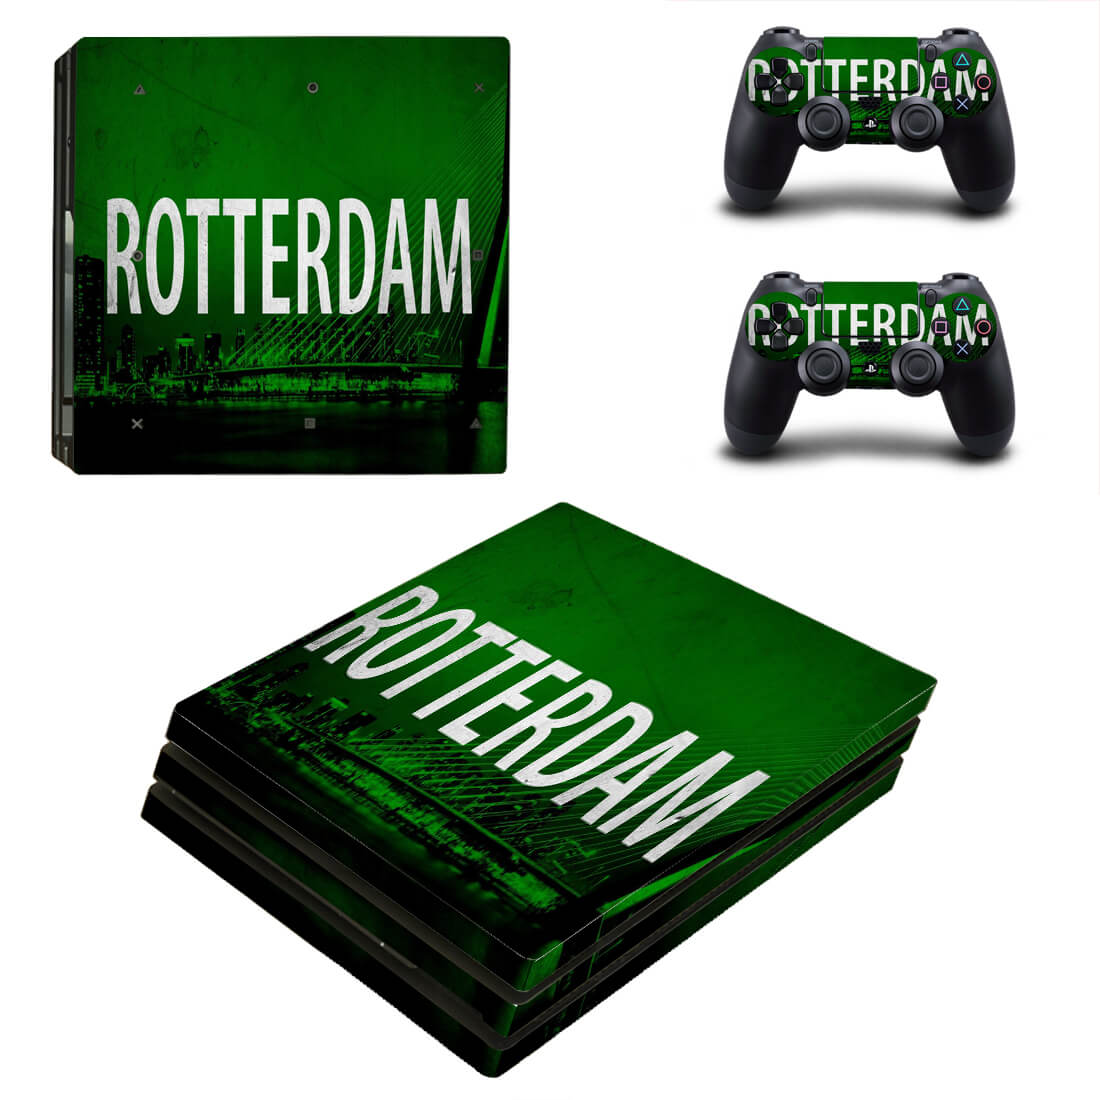 Rotterdam PS4 Pro skin